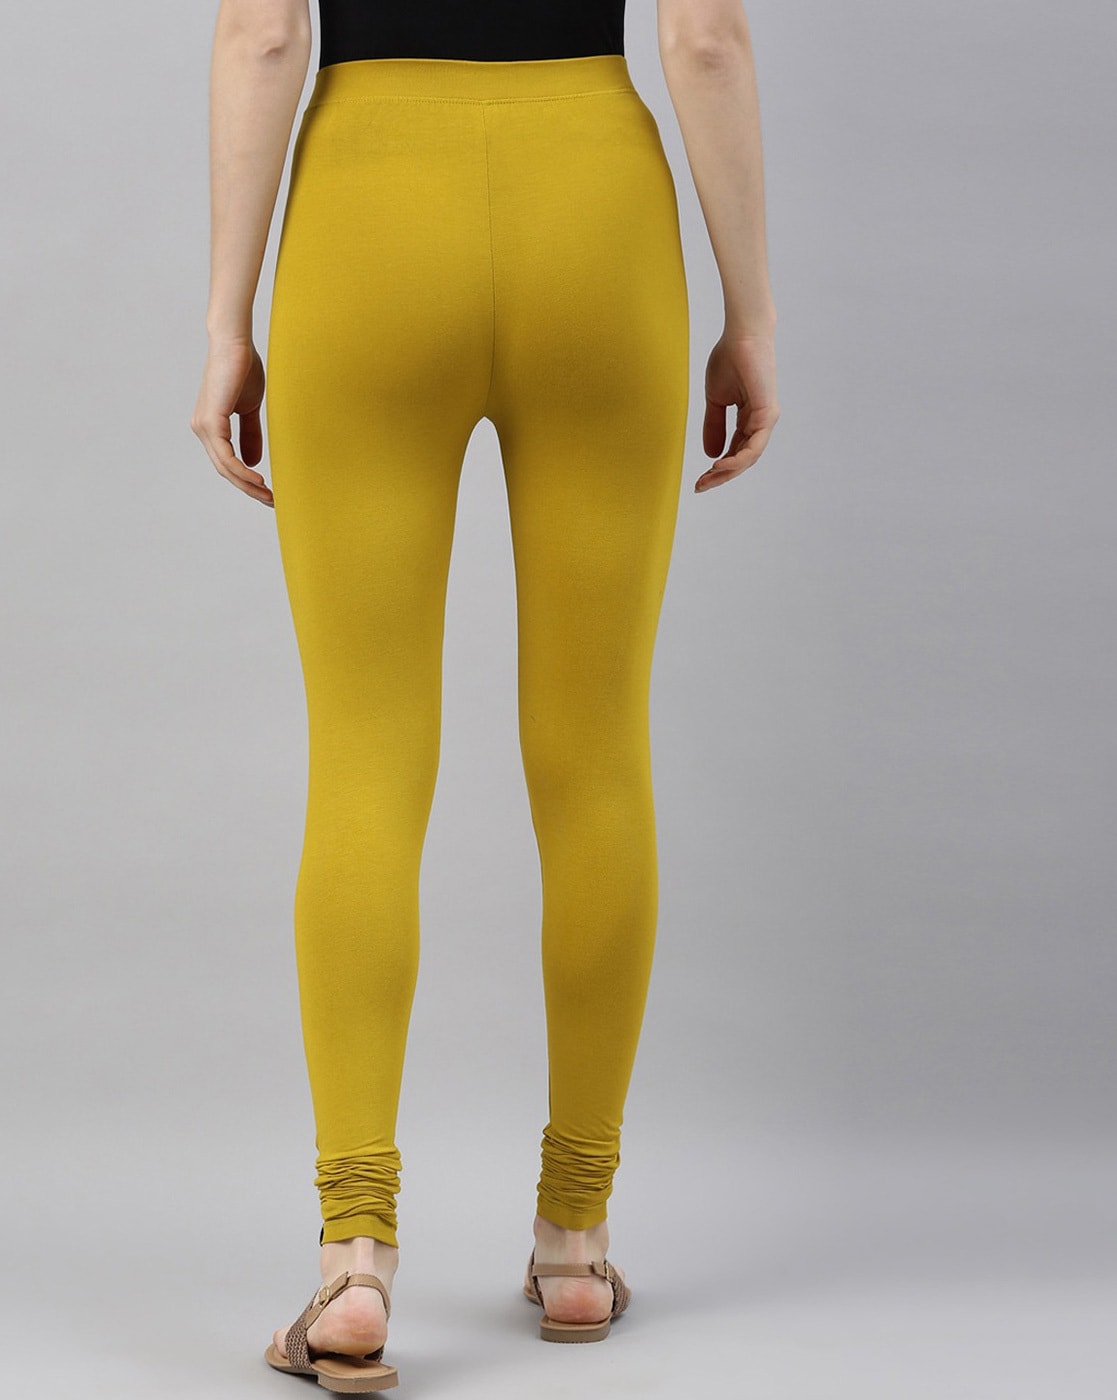 Warblers (Mustard) All-Over Print XS-XL Capri Leggings – Kate Dolamore Art